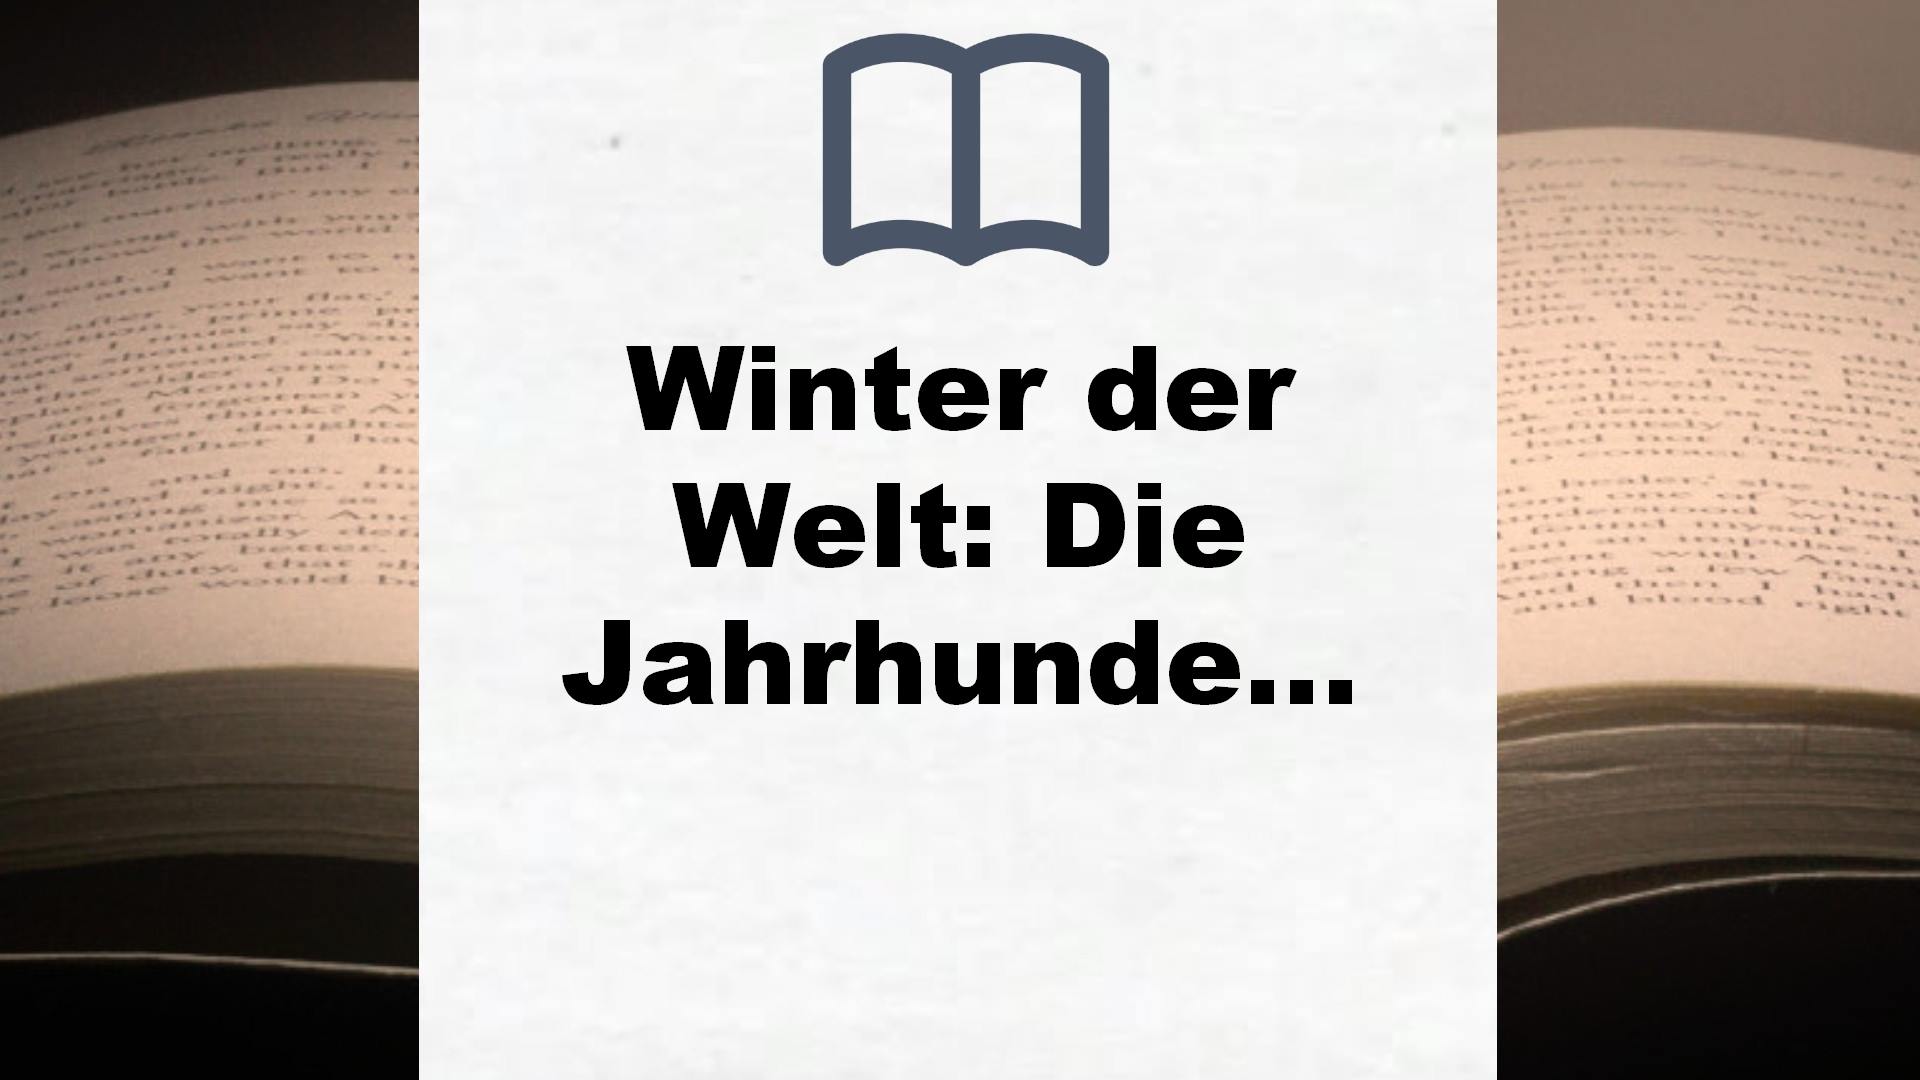 Winter der Welt: Die Jahrhundert-Saga. Roman (Jahrhundert-Trilogie, Band 2) – Buchrezension